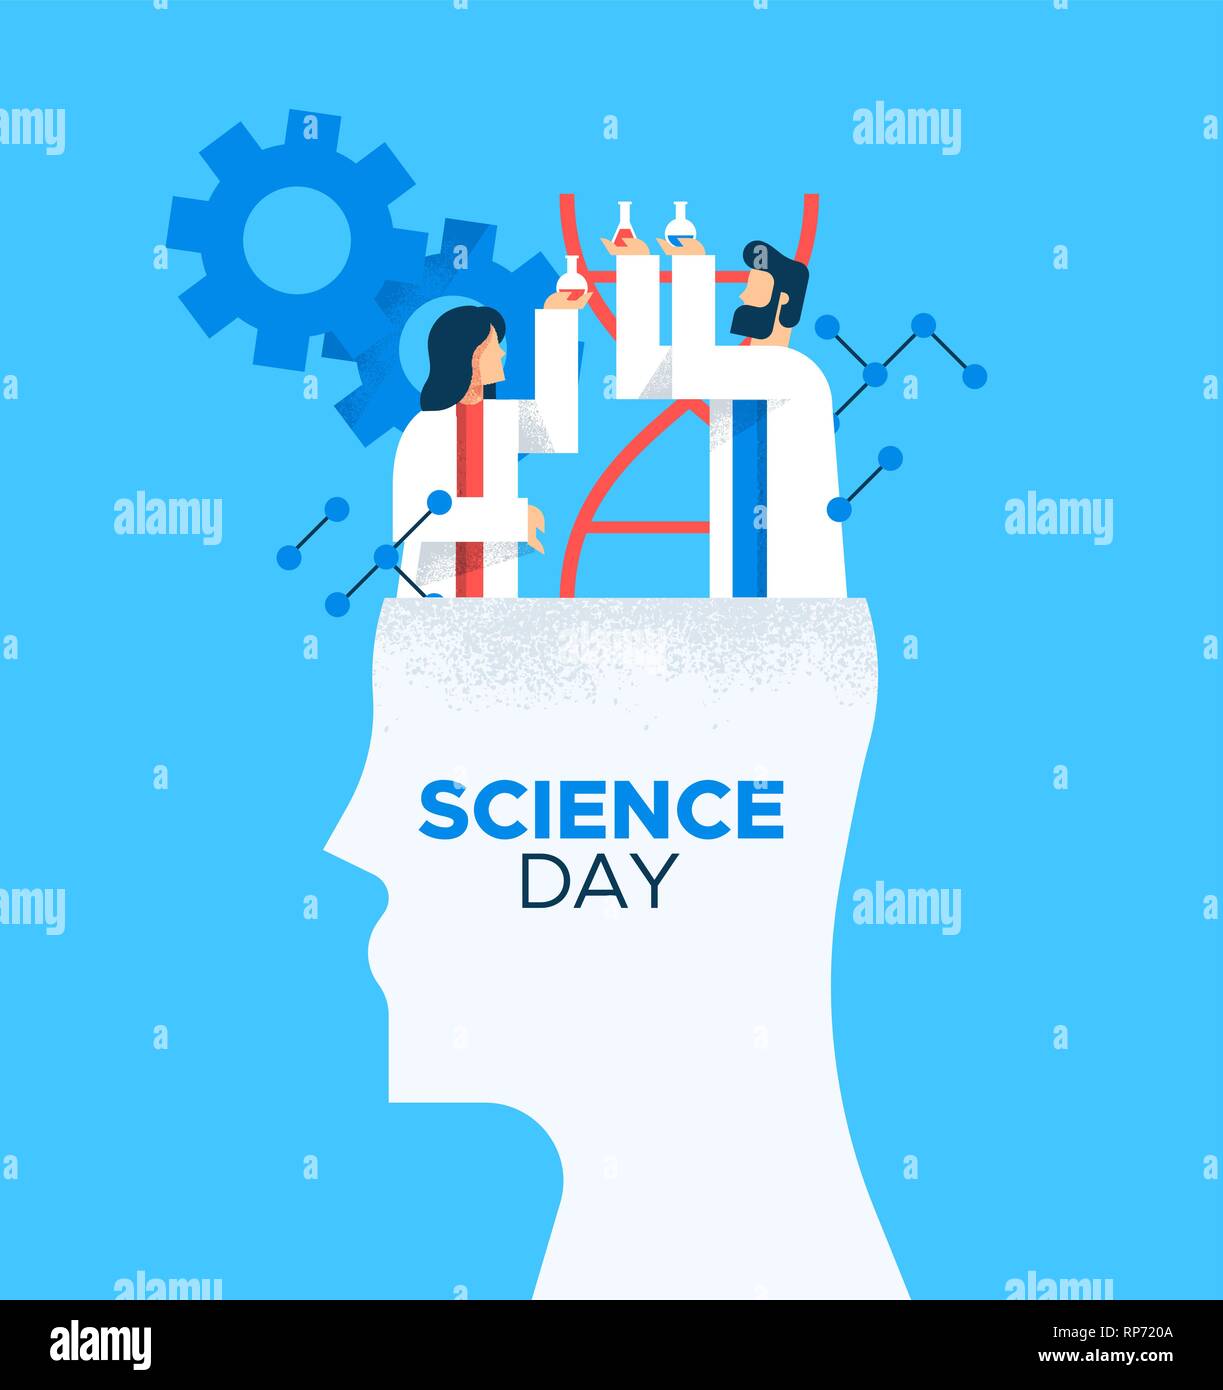 Illustration de carte de la Journée mondiale de la Science de l'homme et de la femme les scientifiques de télévision cartoon style moderne pour l'éducation scientifique concept. Illustration de Vecteur